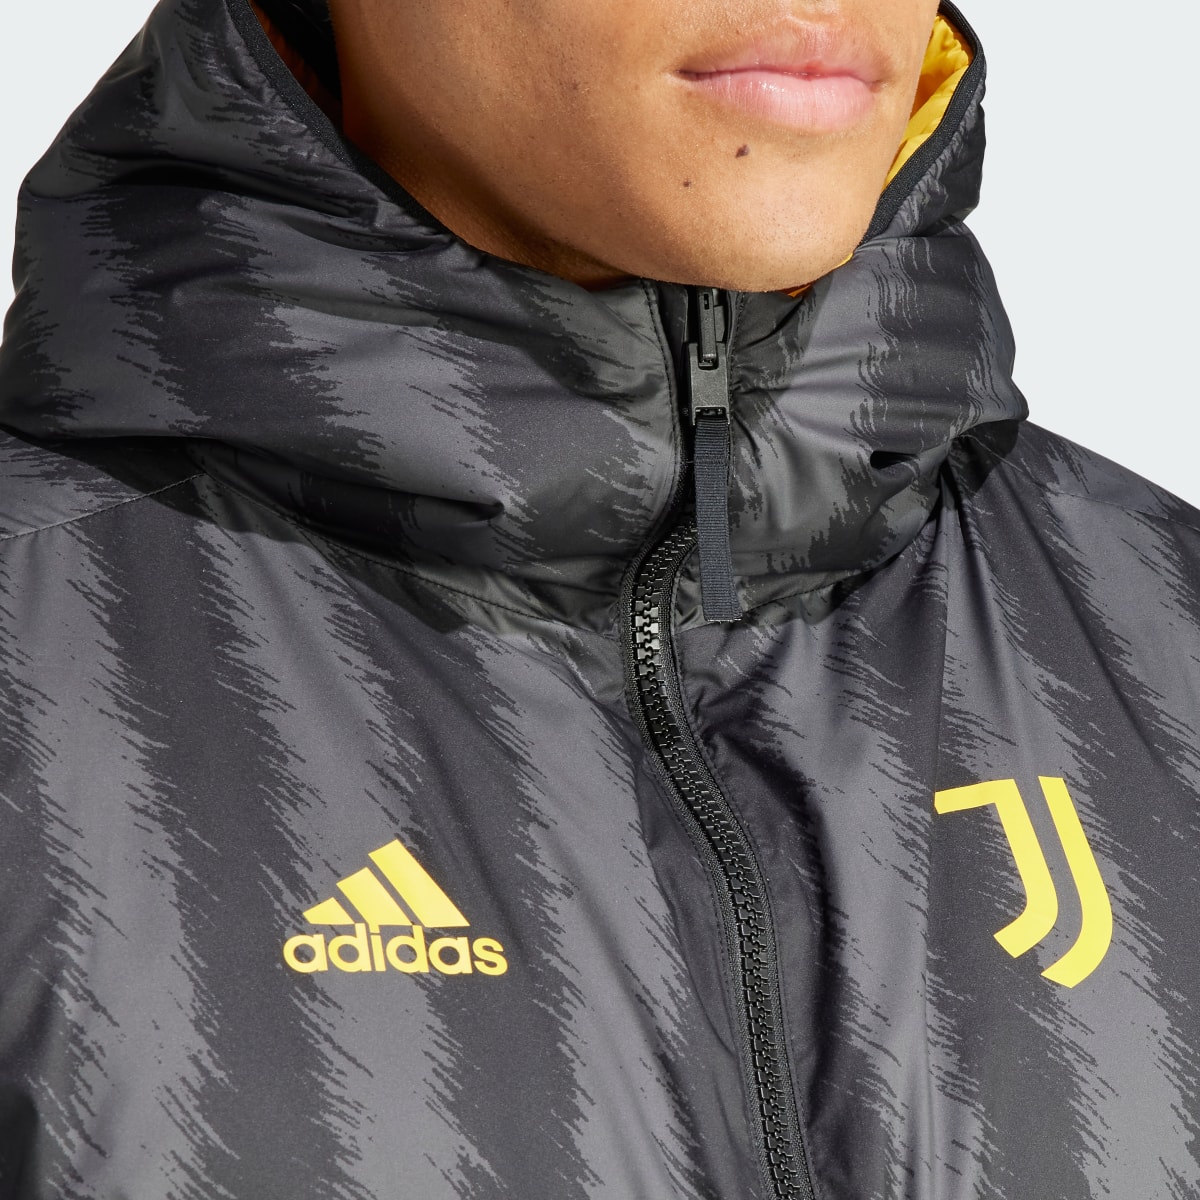 Adidas Juventus DNA Down Jacket. 7